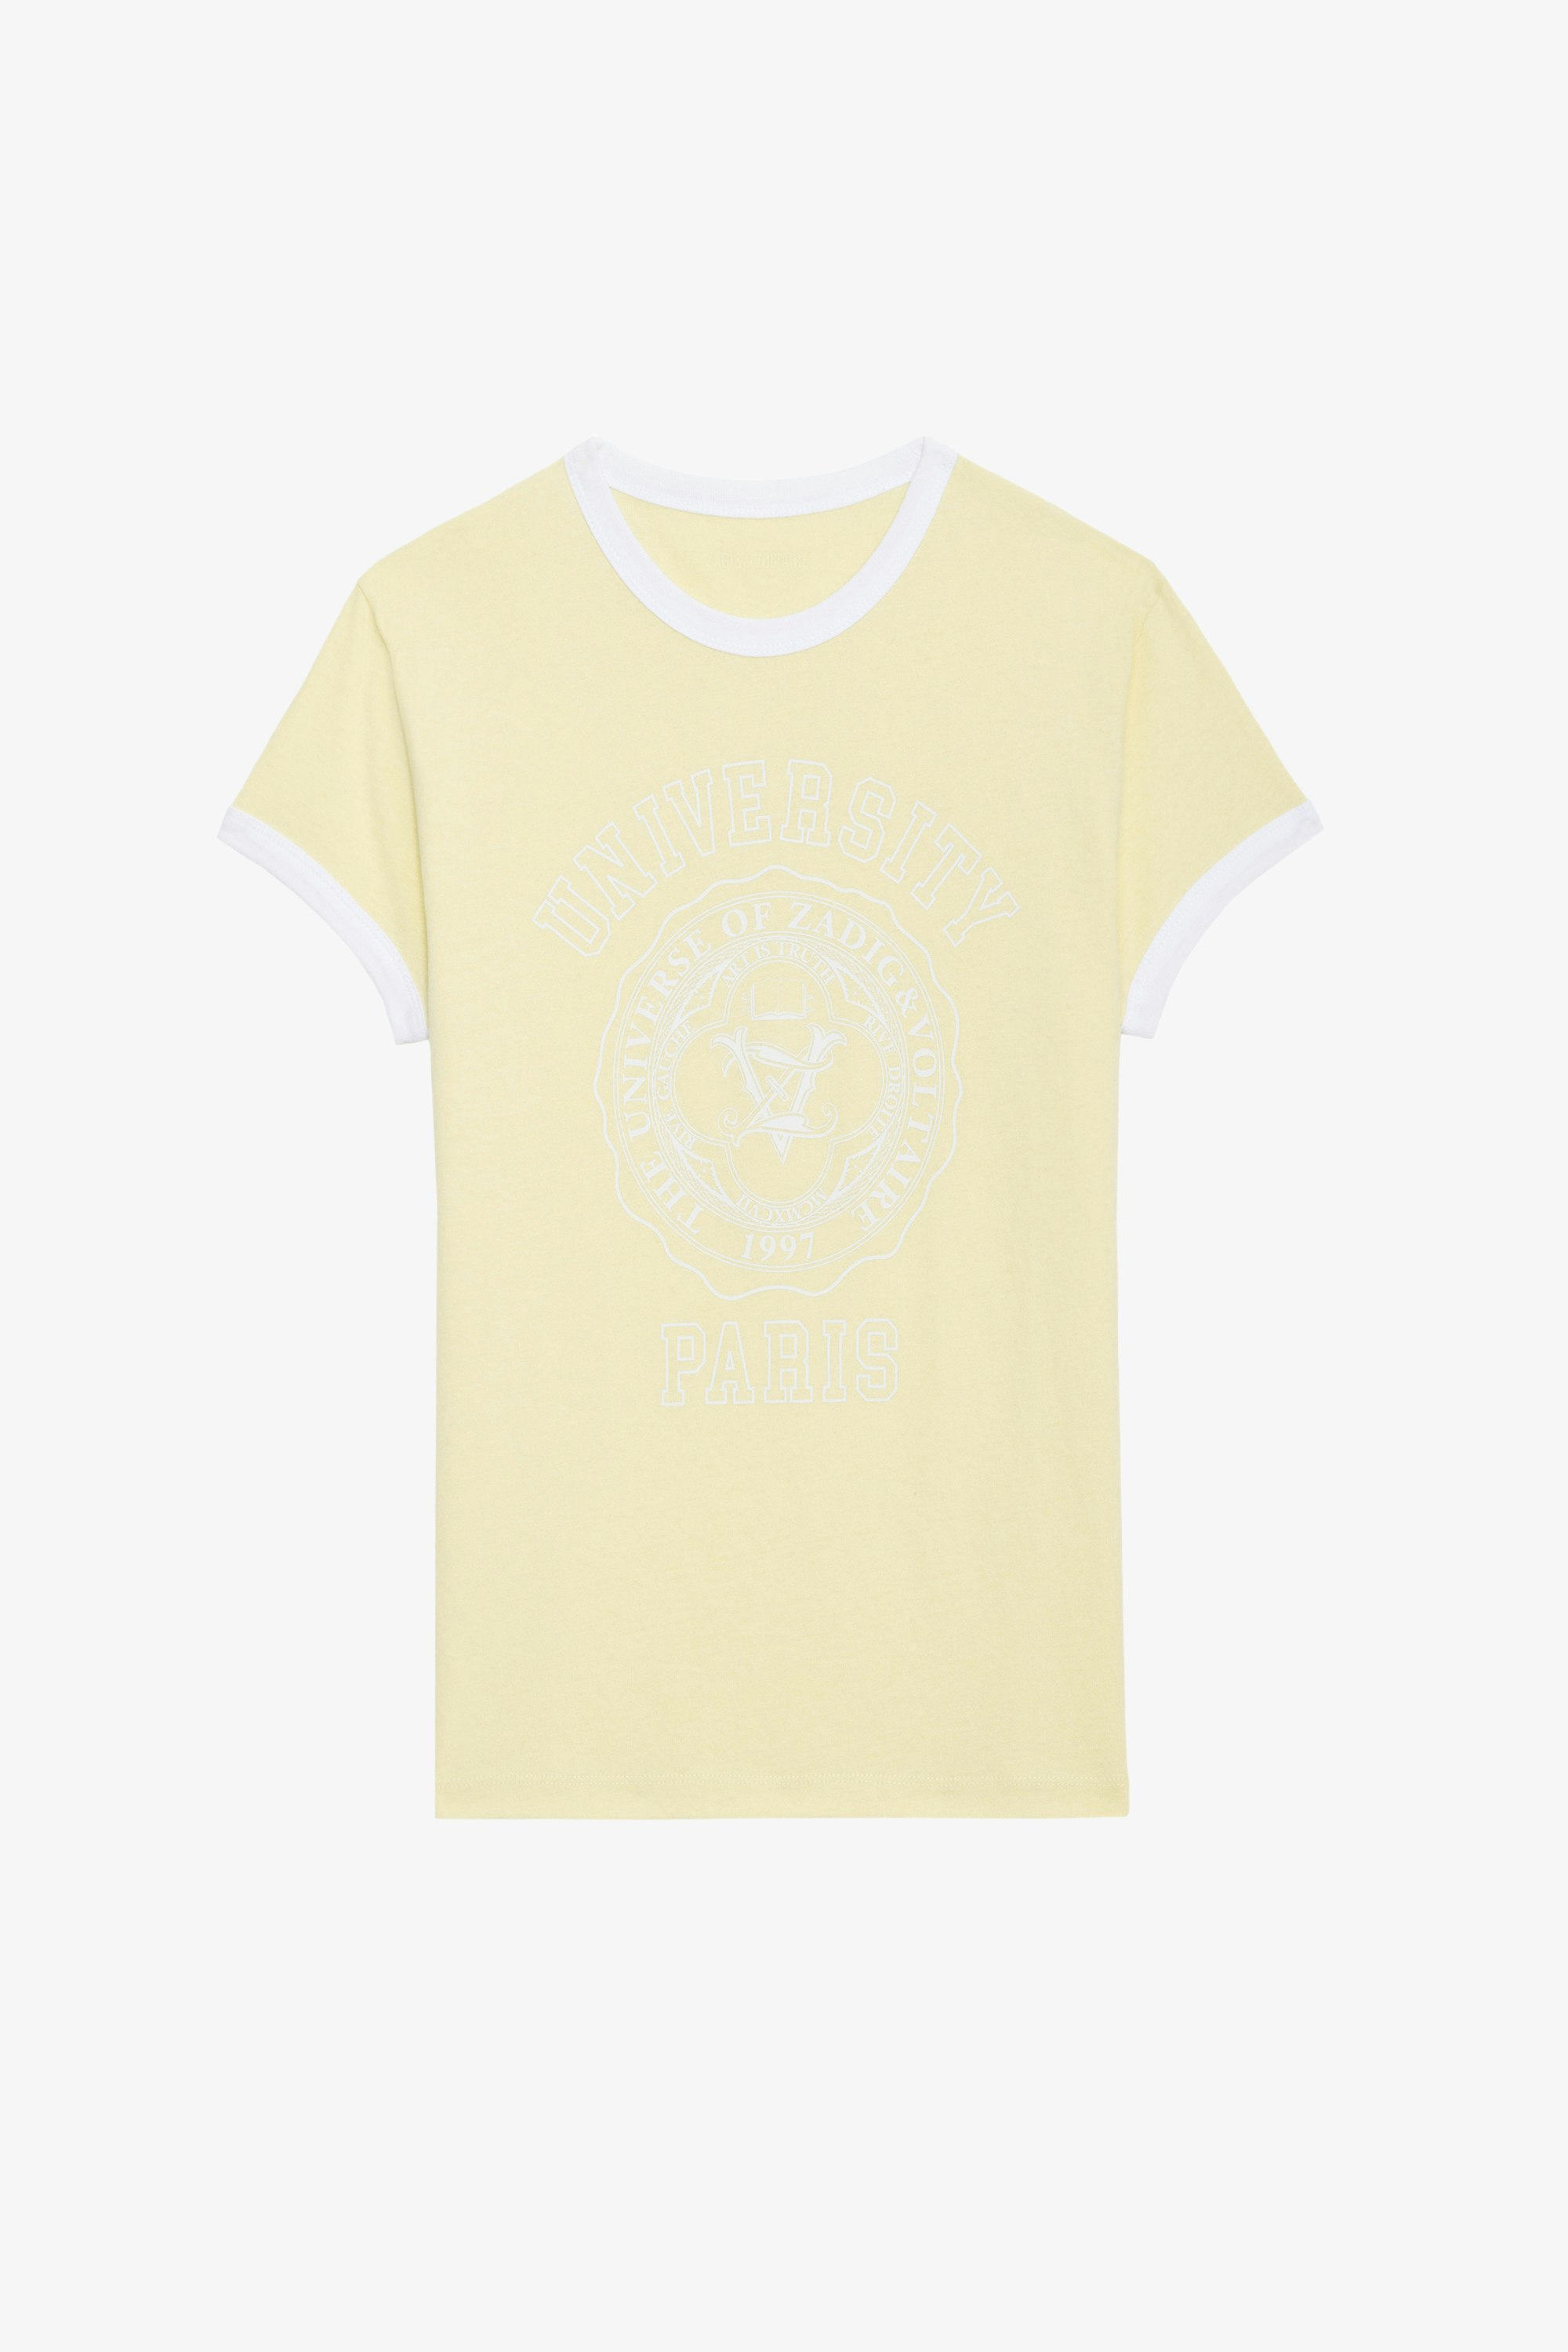 Camiseta Walk University - Camiseta de algodón en color amarillo claro con mangas cortas, con motivo universitario y bordes de contraste.